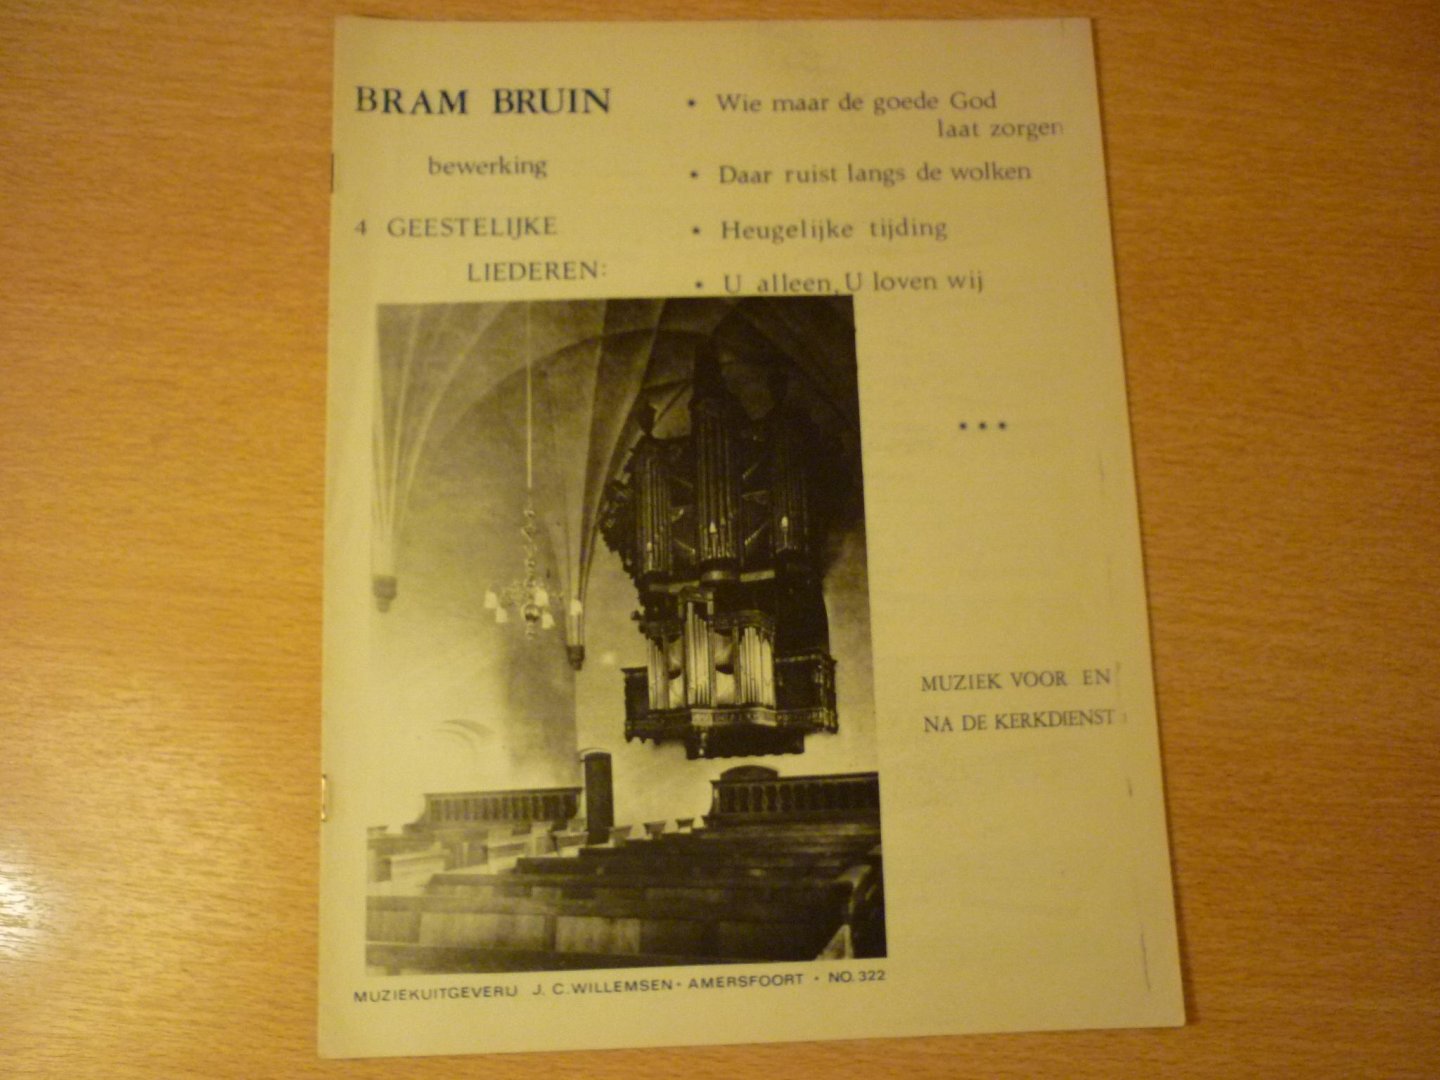 Bruin; Bram - 4 Geestrelijke Liederen; Muziek voor en na de kerkdienst